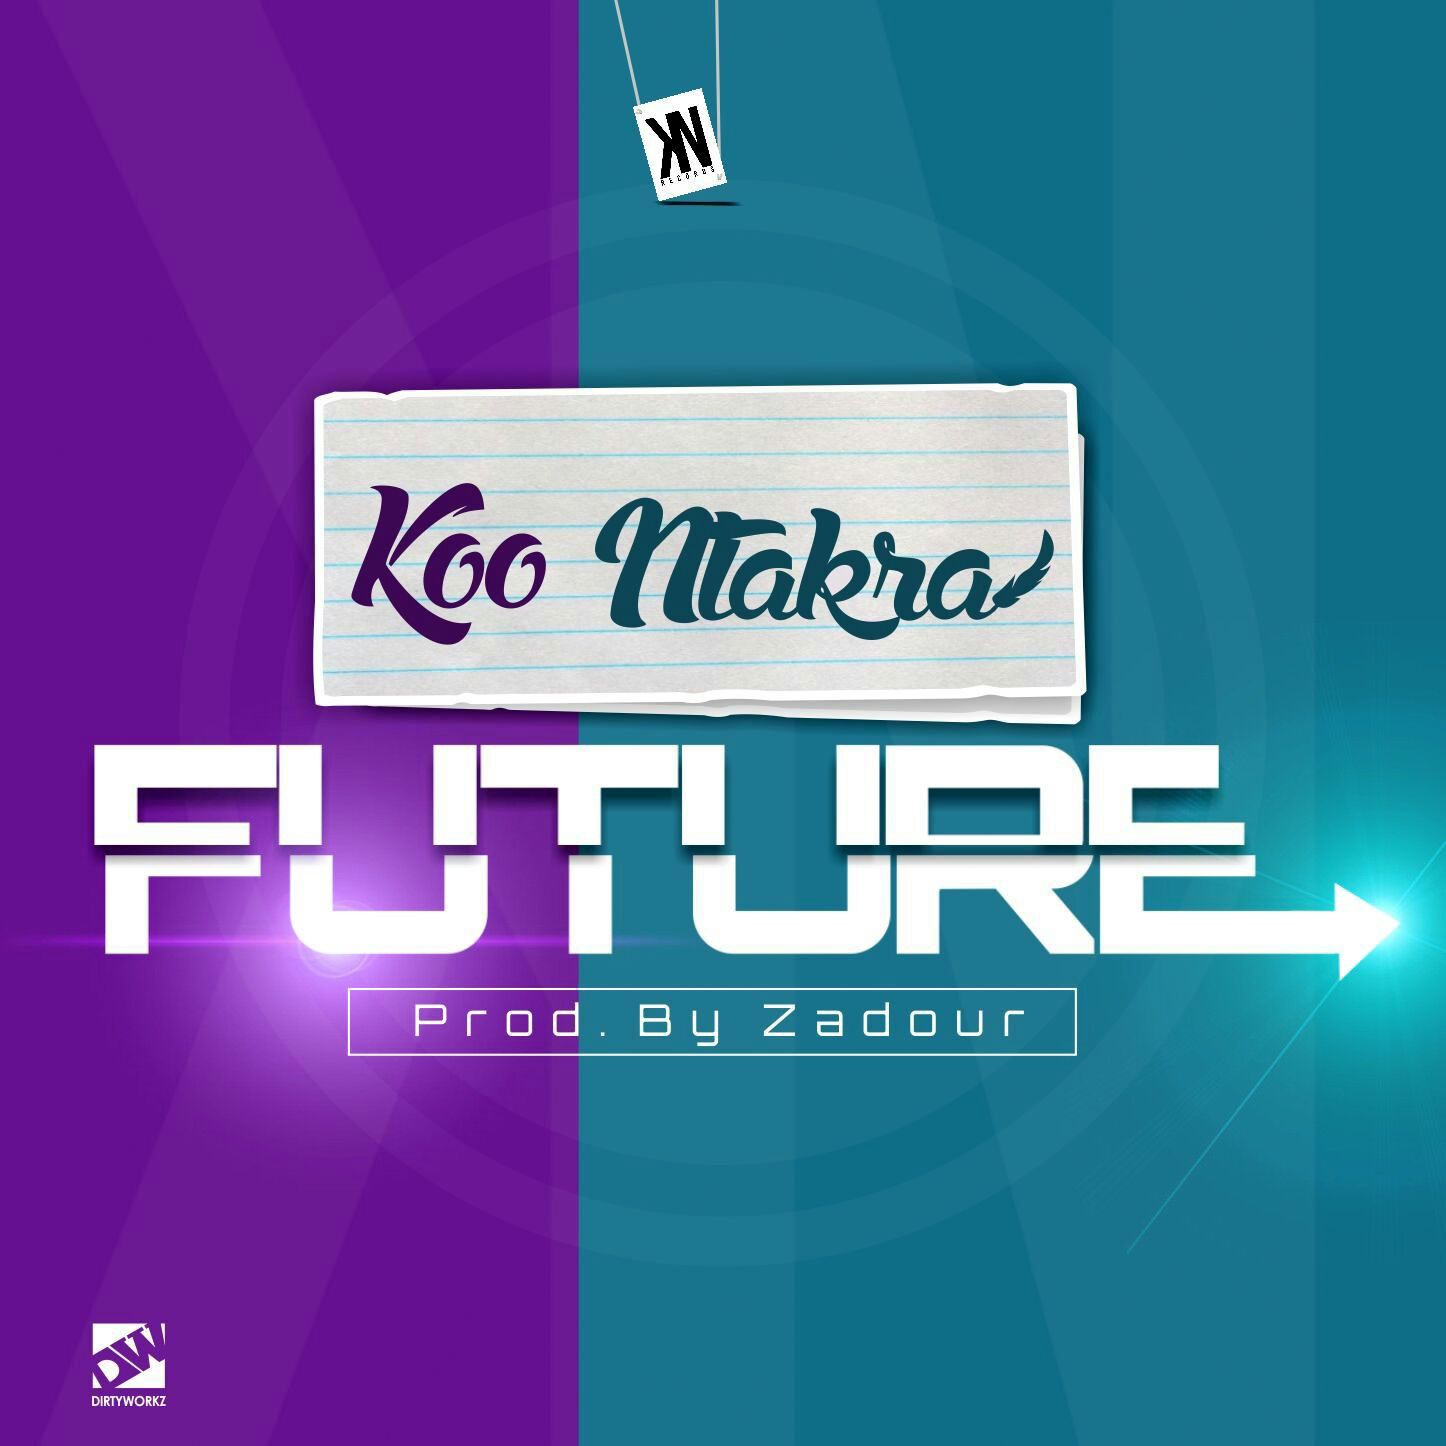 Koo Ntakra Future